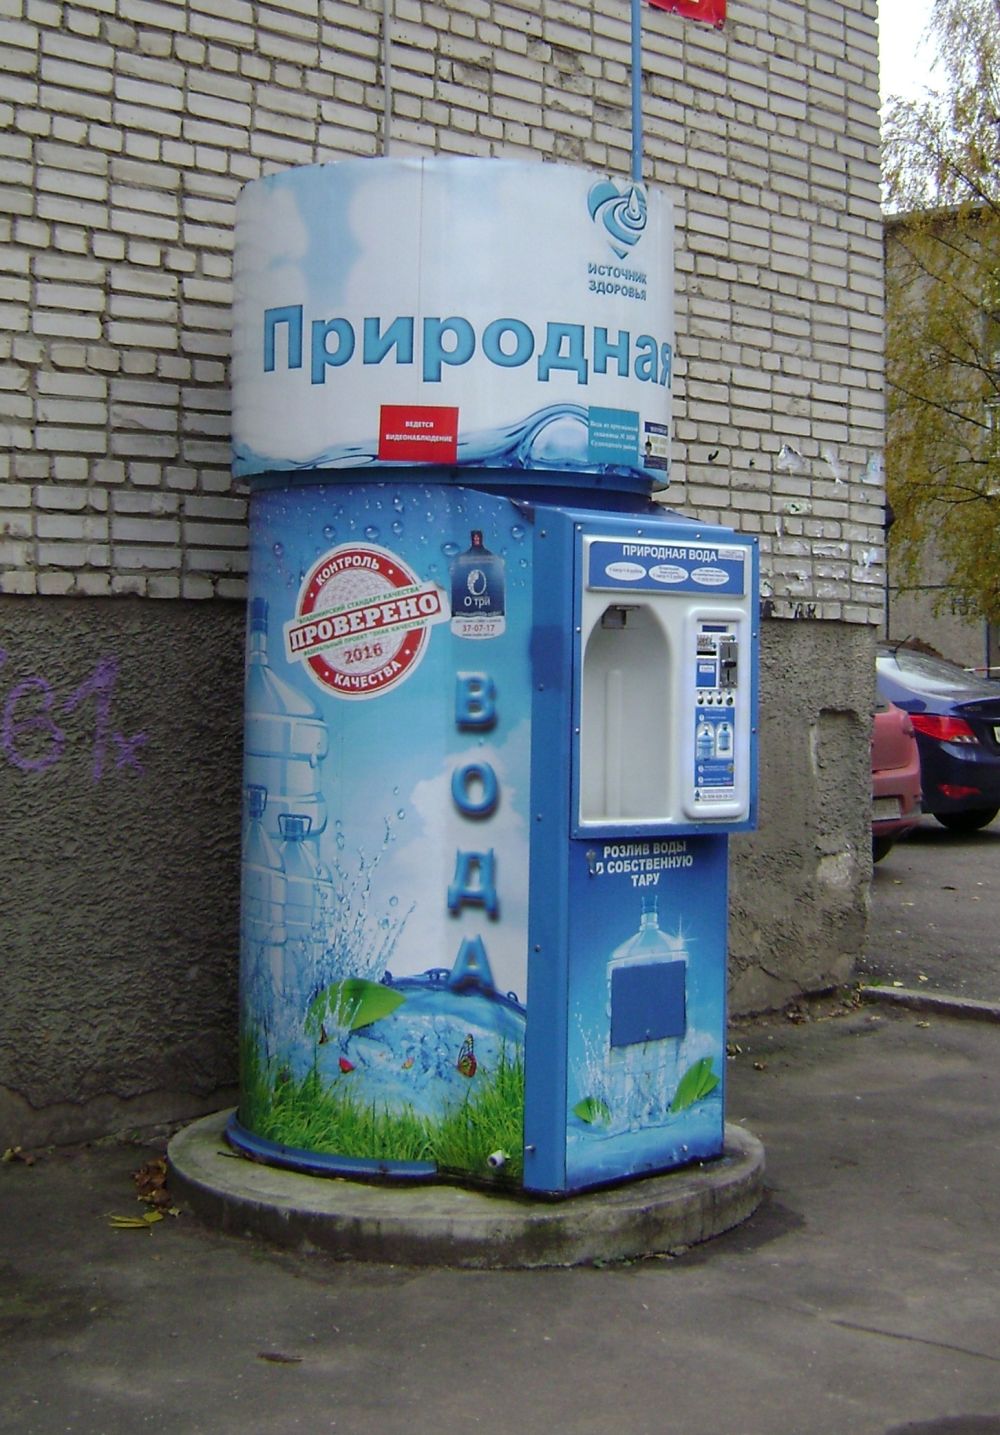 Точка продажи воды. Автомат питьевой воды. Автомат с водой. Вендинговый автомат с водой. Уличный автомат с водой.